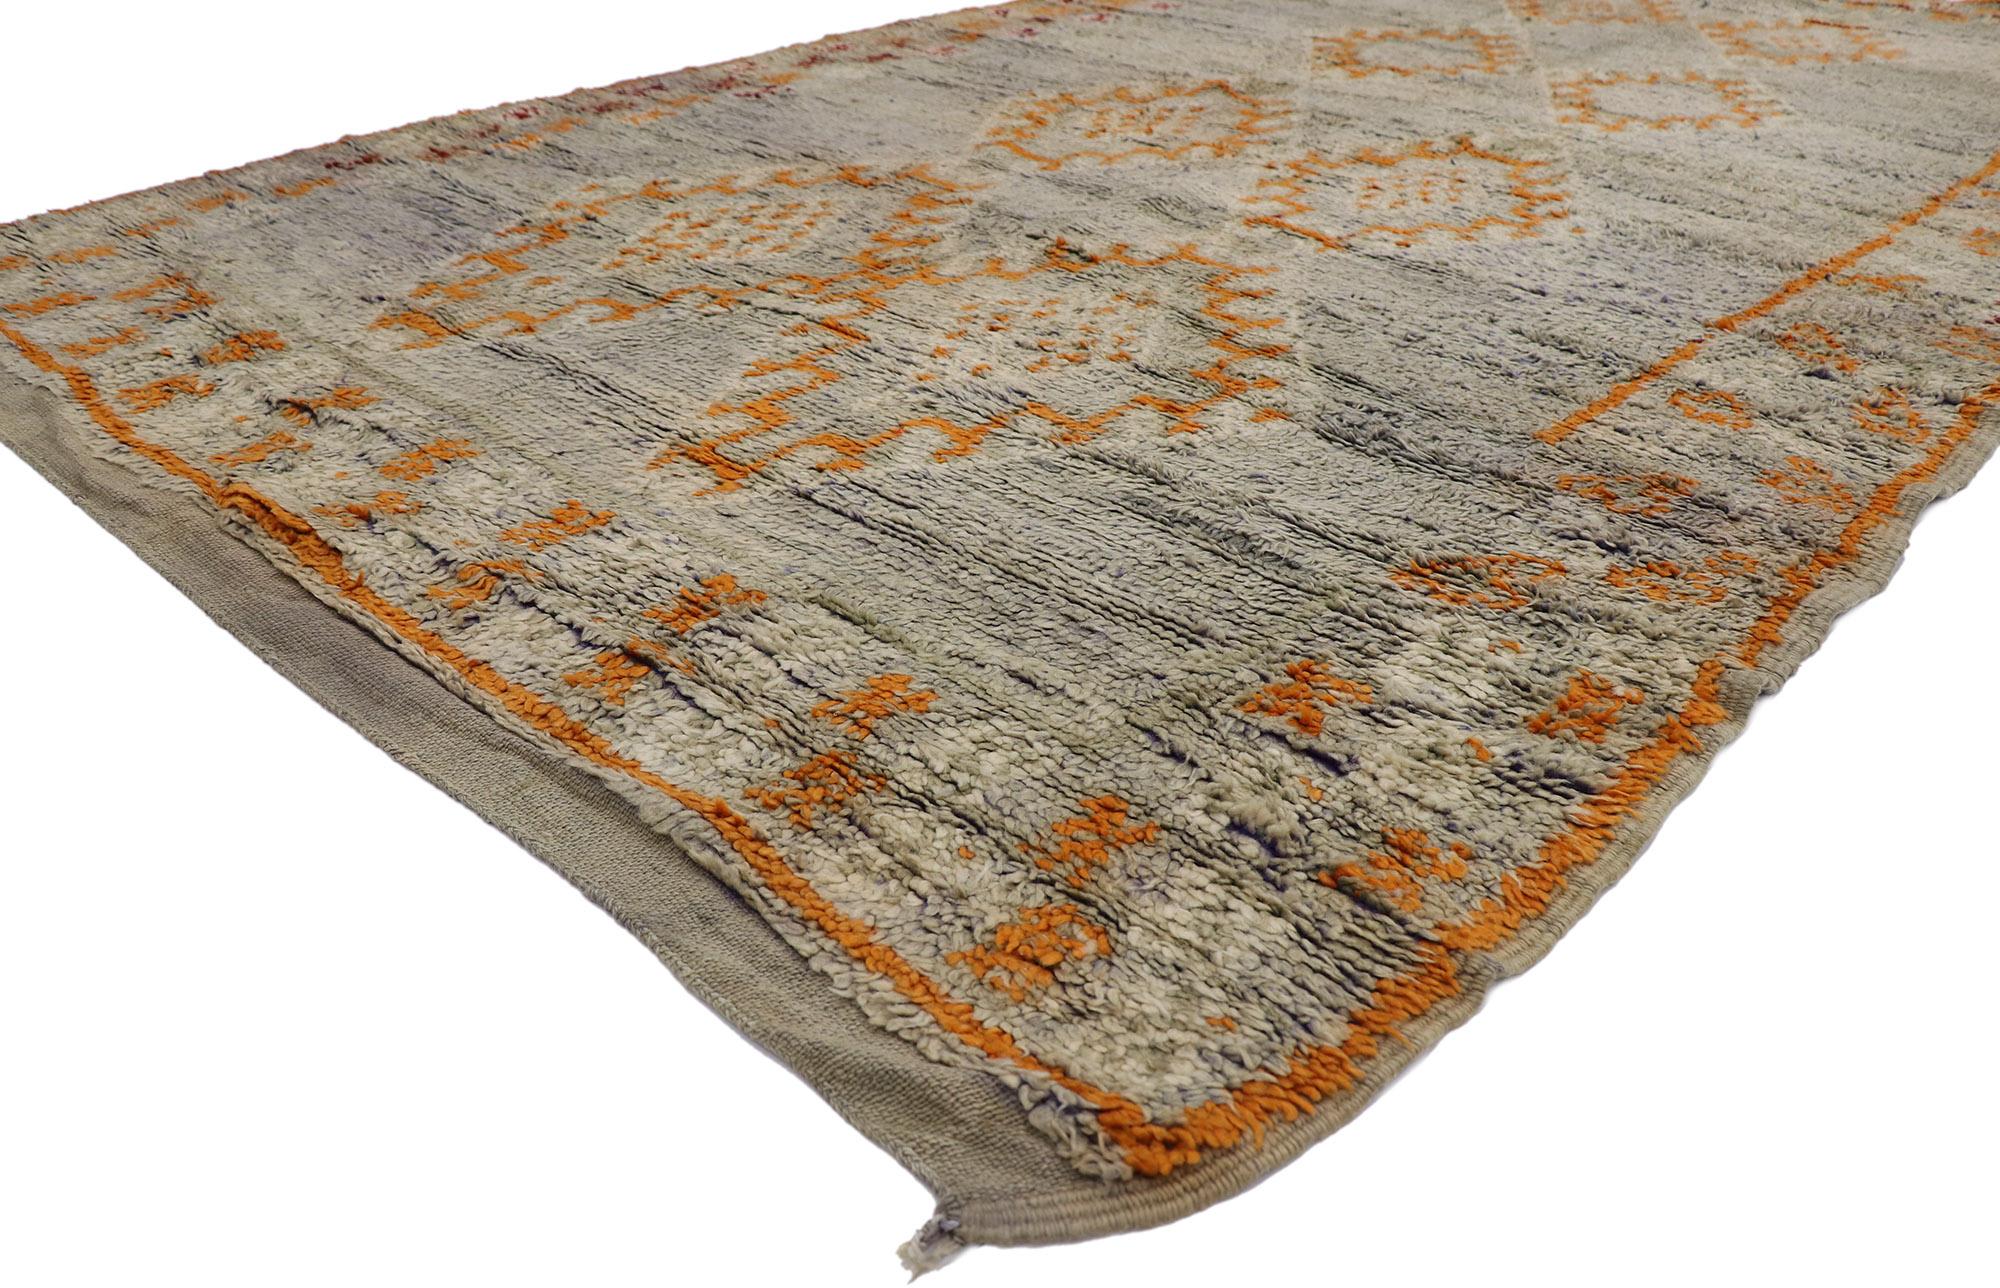 21433 Marokkanischer Berberteppich im Vintage-Stil 06'03 x 11'02. Dieser handgeknüpfte marokkanische Berberteppich aus Wolle mit ausdrucksstarkem Design, unglaublichen Details und Textur ist eine fesselnde Vision gewebter Schönheit. Das grau und